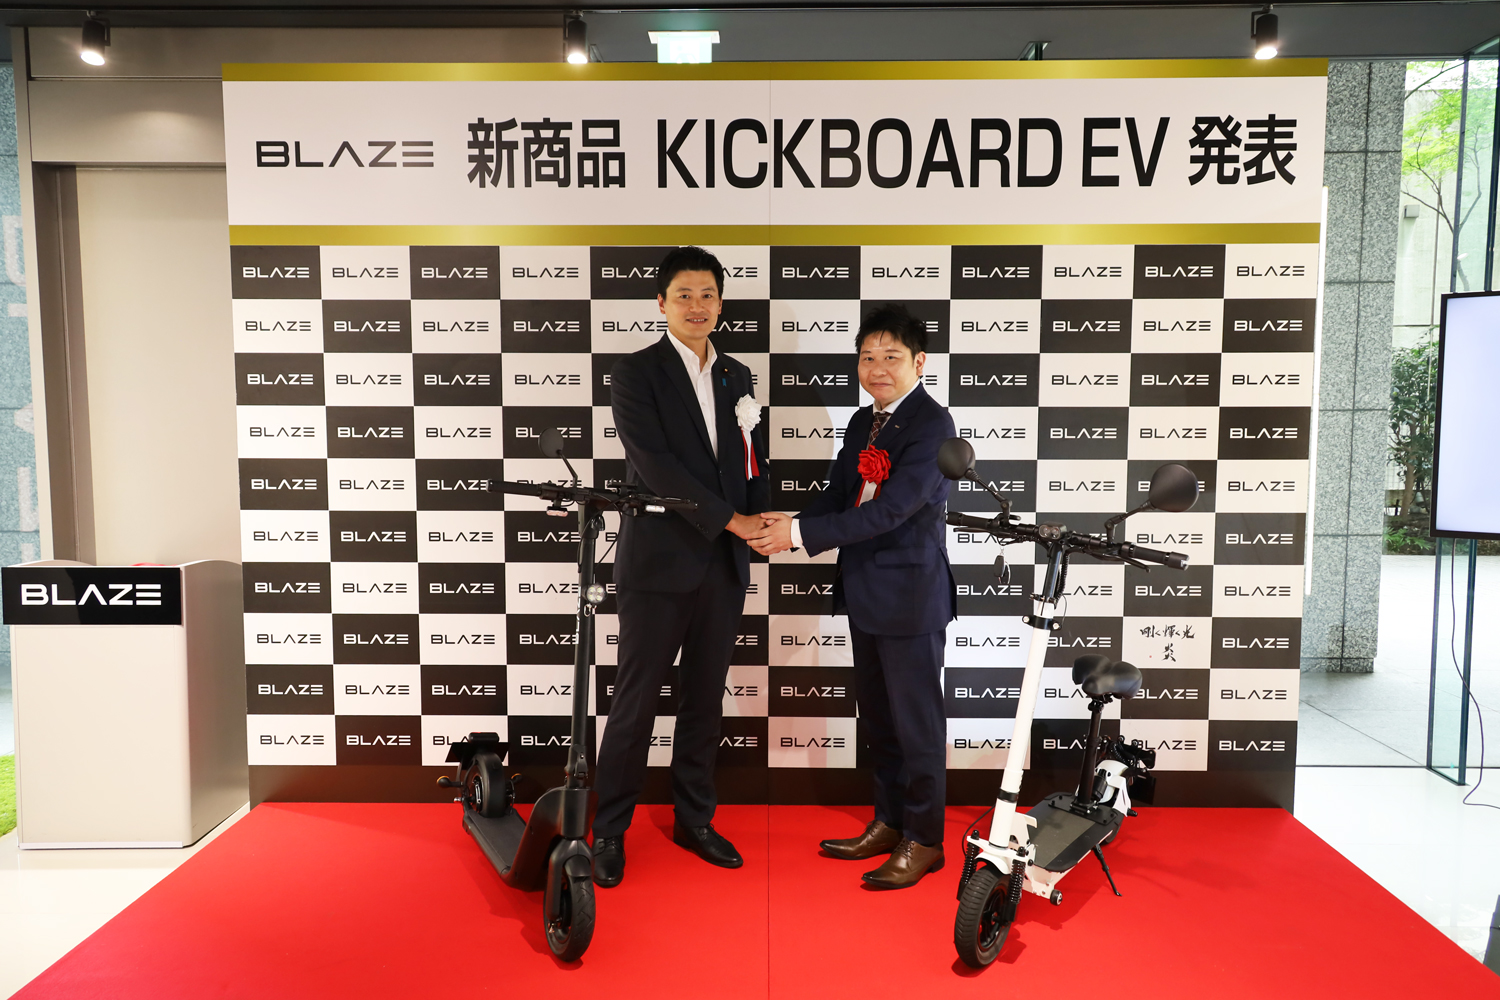 「特定小型原動機付自転車」となる「BLAZE KICKBOARD EV」を発売